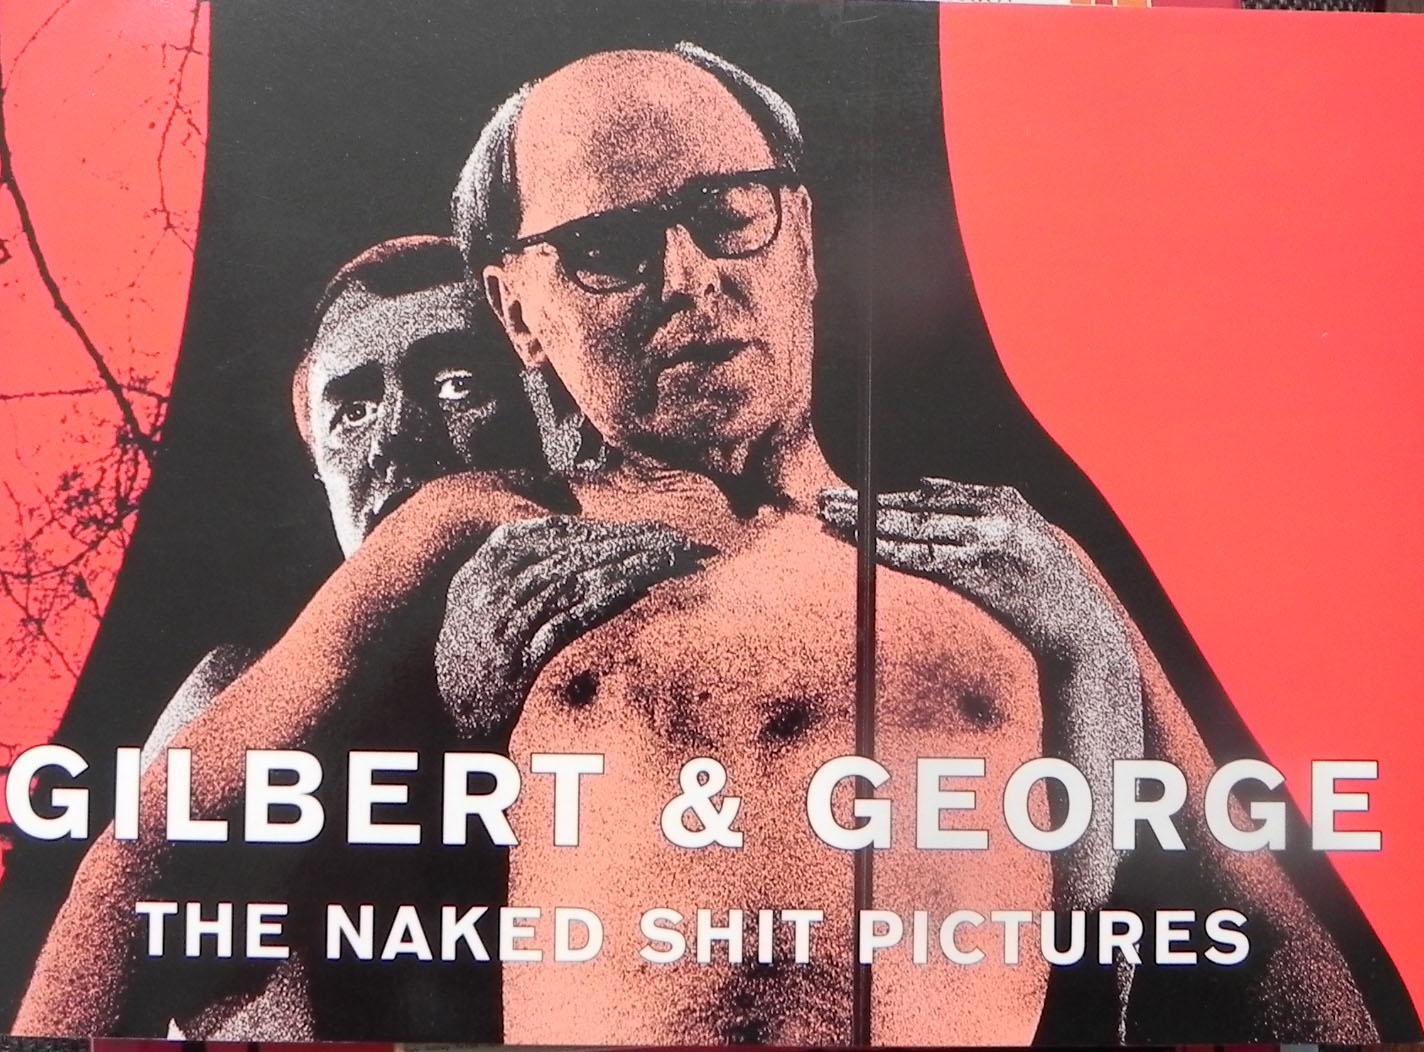 Nieuwenhuyzen, Martijn van / Fuchs, Rudi. - Gilbert & George., the naked shit pictures